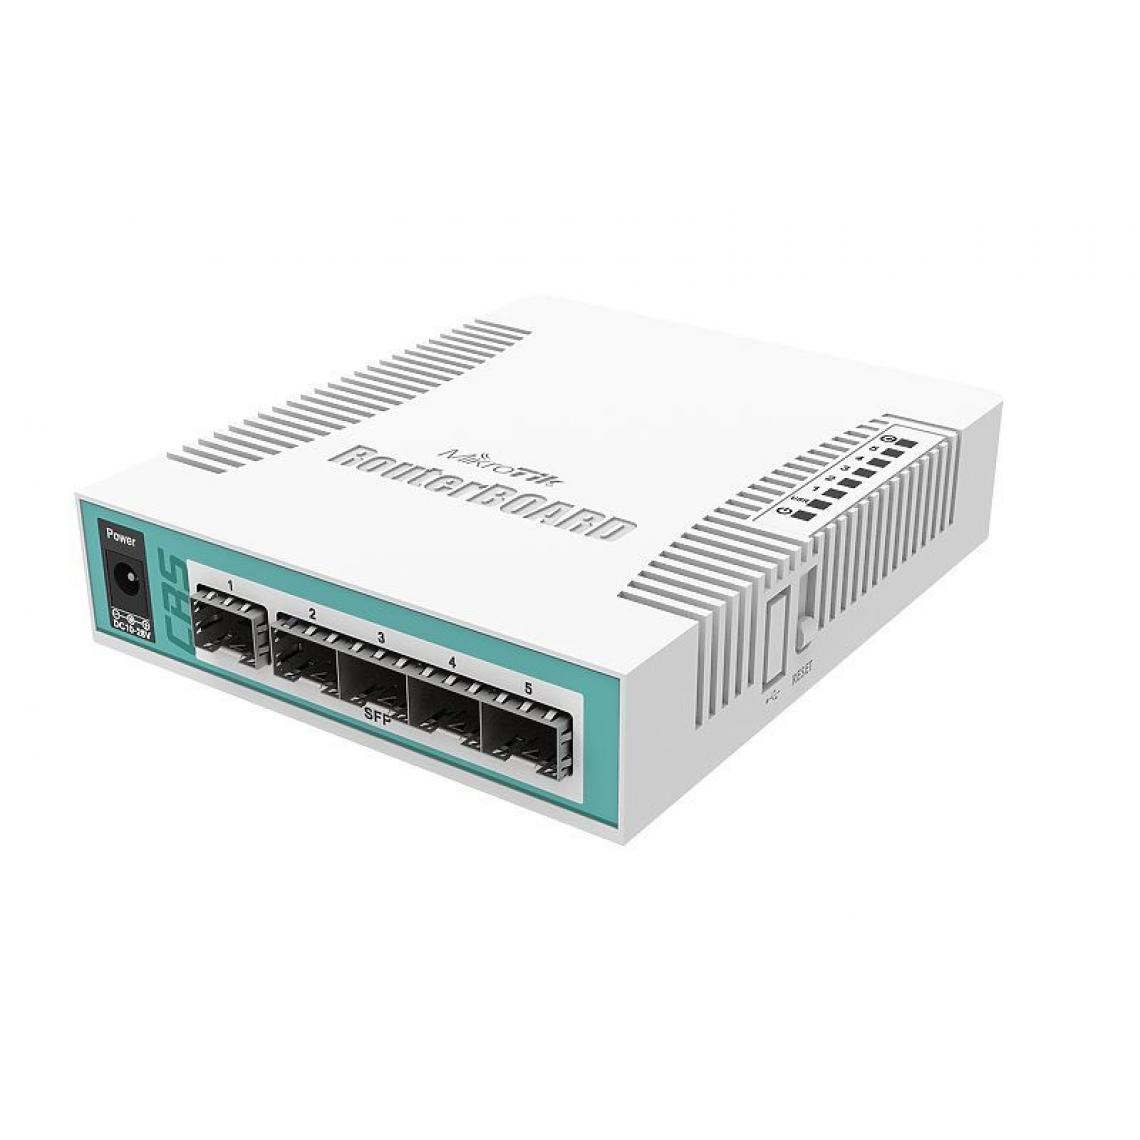 Inconnu - Mikrotik CRS106-1C-5S commutateur réseau Gigabit Ethernet (10/100/1000) Connexion Ethernet, supportant l'alimentation via ce port (PoE) Blanc - Switch